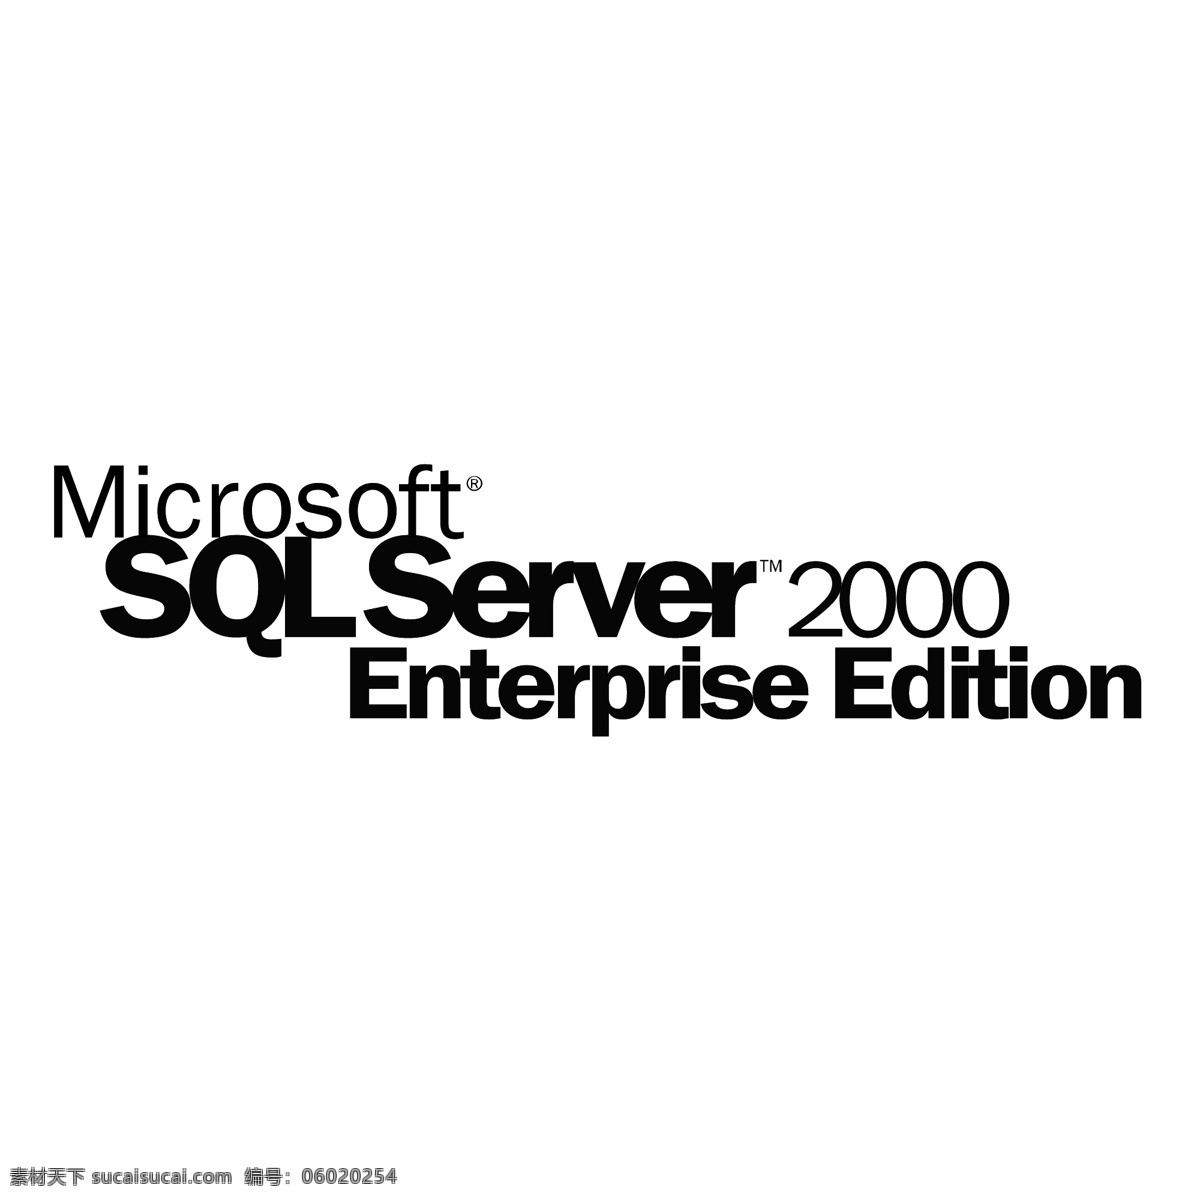 2000 server 微软 sql 标识 公司 免费 品牌 品牌标识 商标 矢量标志下载 免费矢量标识 矢量 psd源文件 logo设计